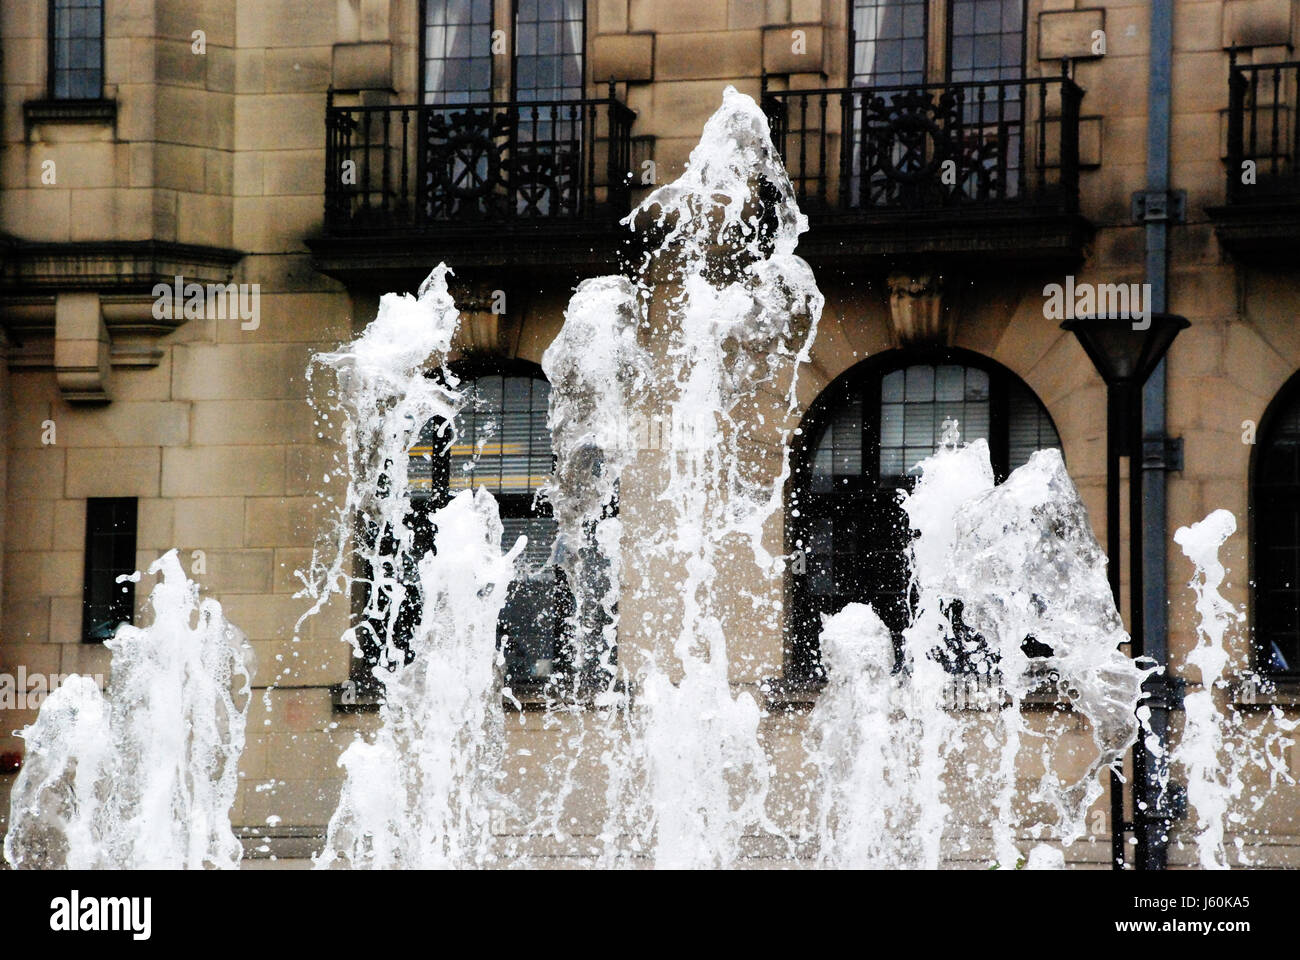 Accostage dapper jolie plus jolie jolie jolie ravissante fontaines splash Banque D'Images